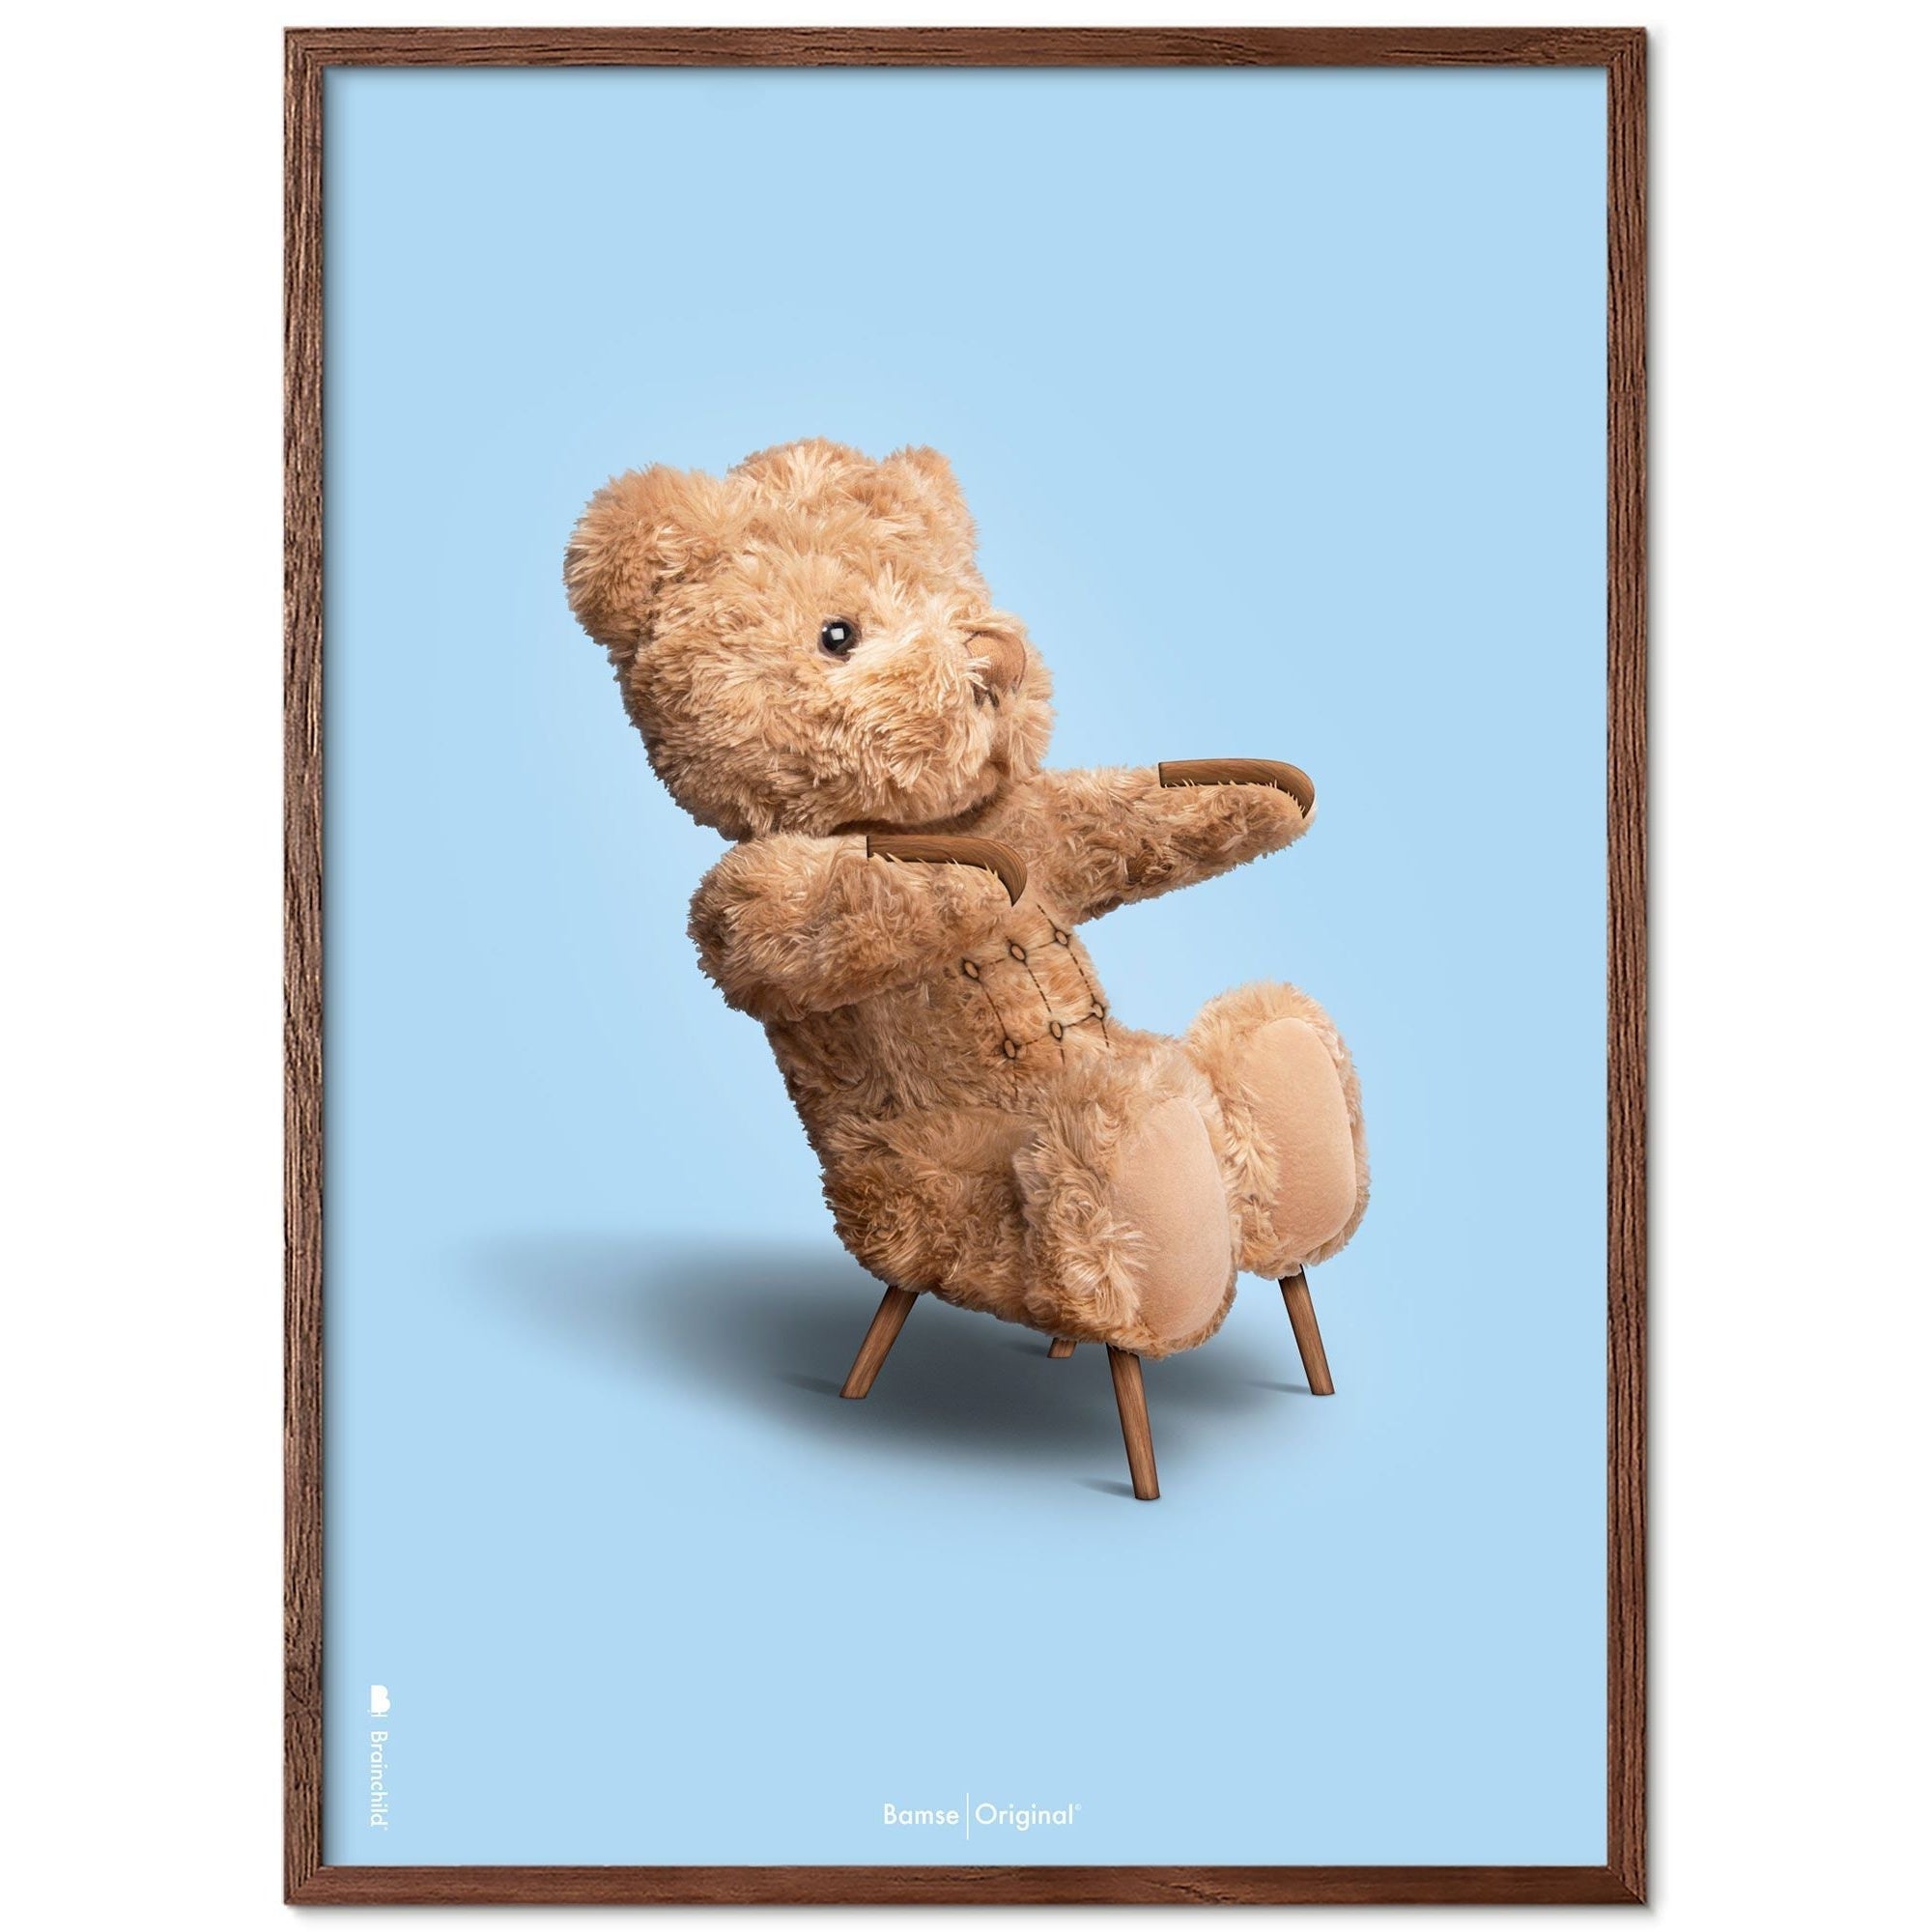 Brainchild Teddy Bear Classic plakát z plakátu vyrobený z tmavého dřeva Ram 70x100 cm, světle modré pozadí